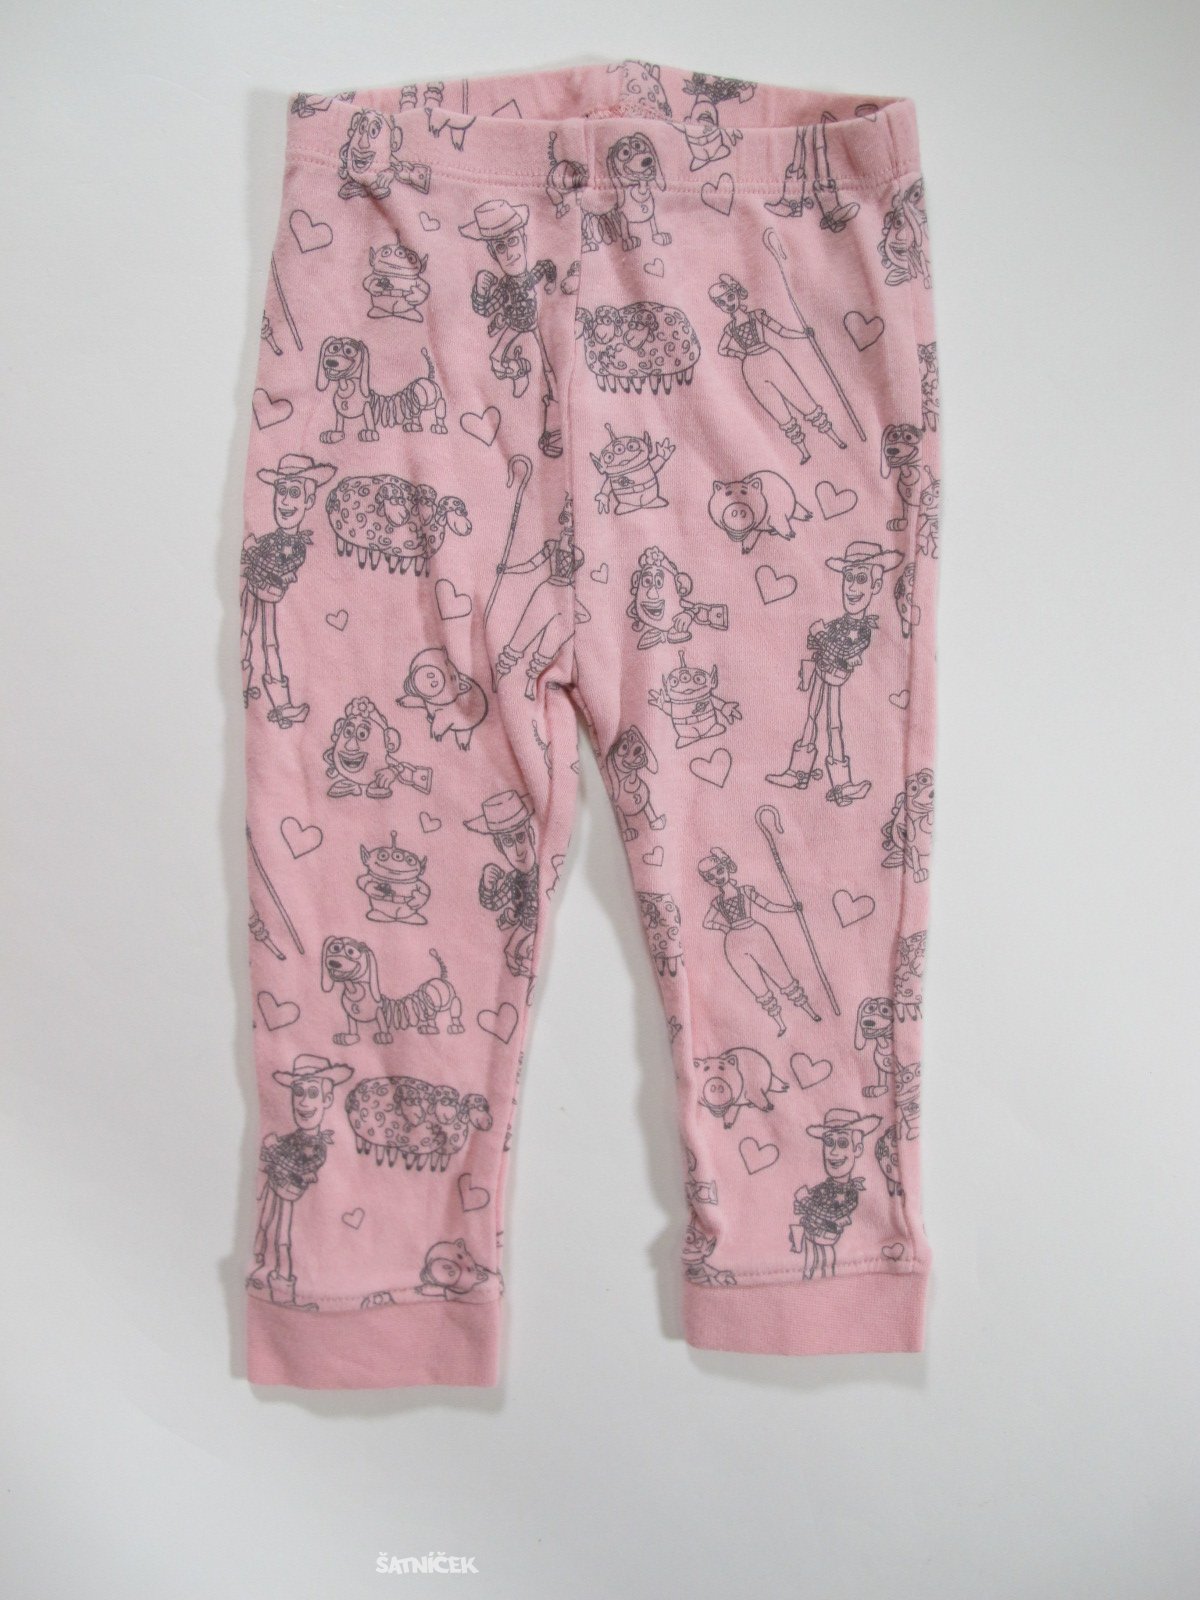 Pyžamové kalhoty  pro holky obrázkové secondhand